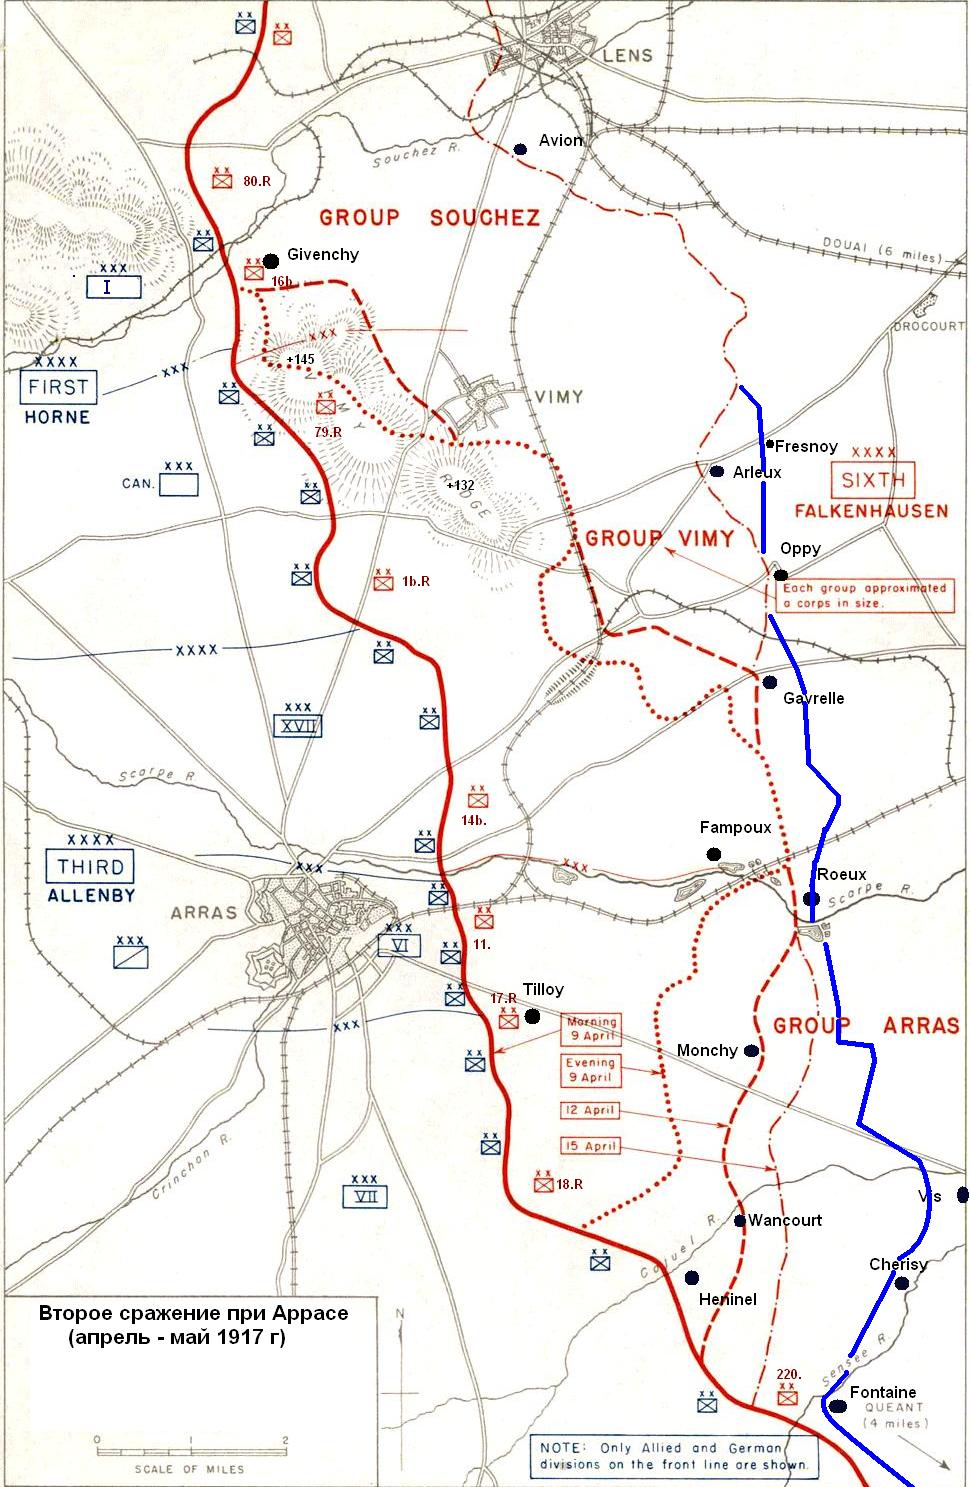 Общая схема Второго сражения при Аррасе (период 9.04. - 31.05.1917)